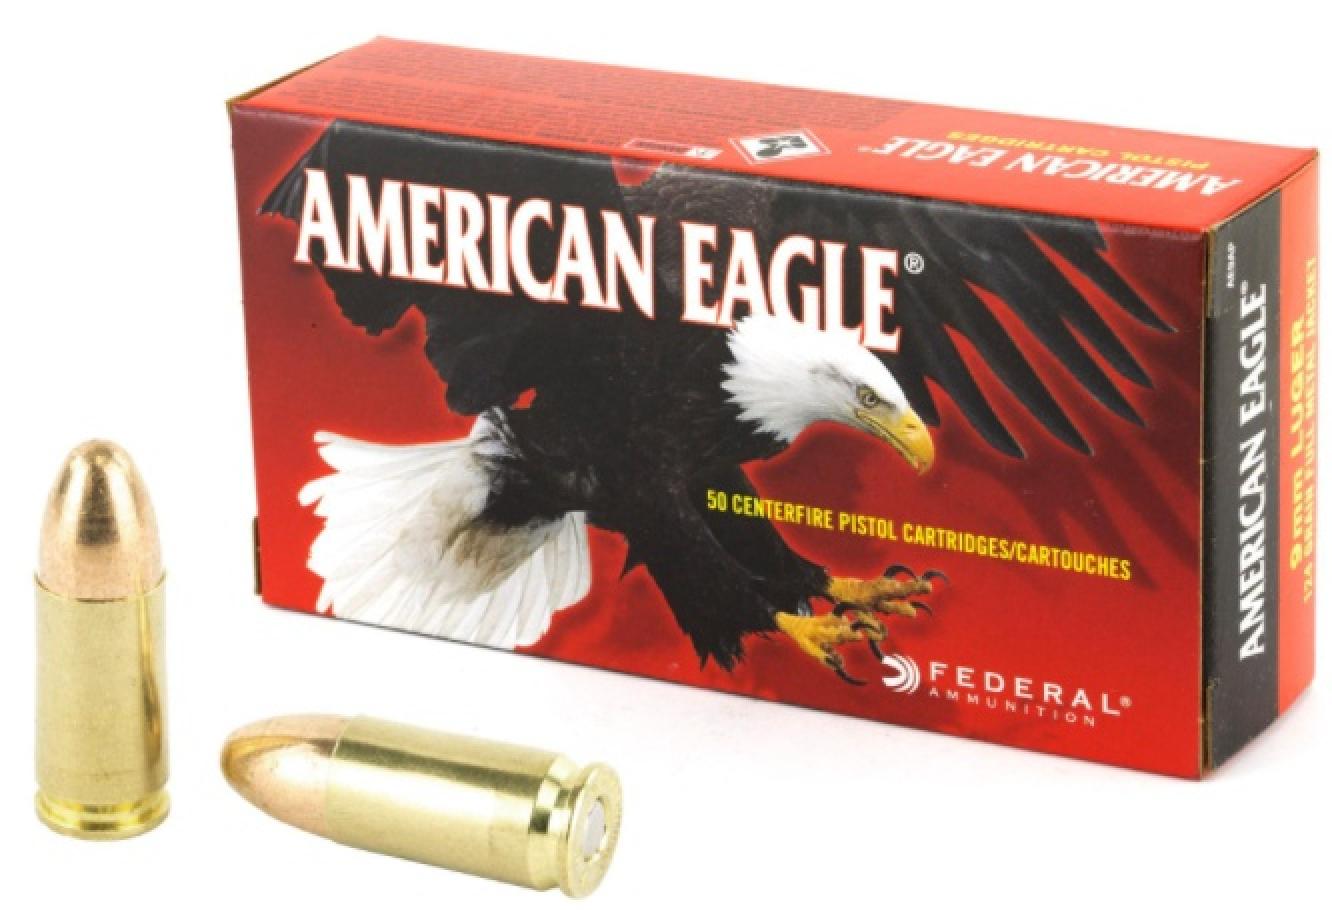 Federal Premium American Eagle 9mm 124 Grain Full Metal Jacket